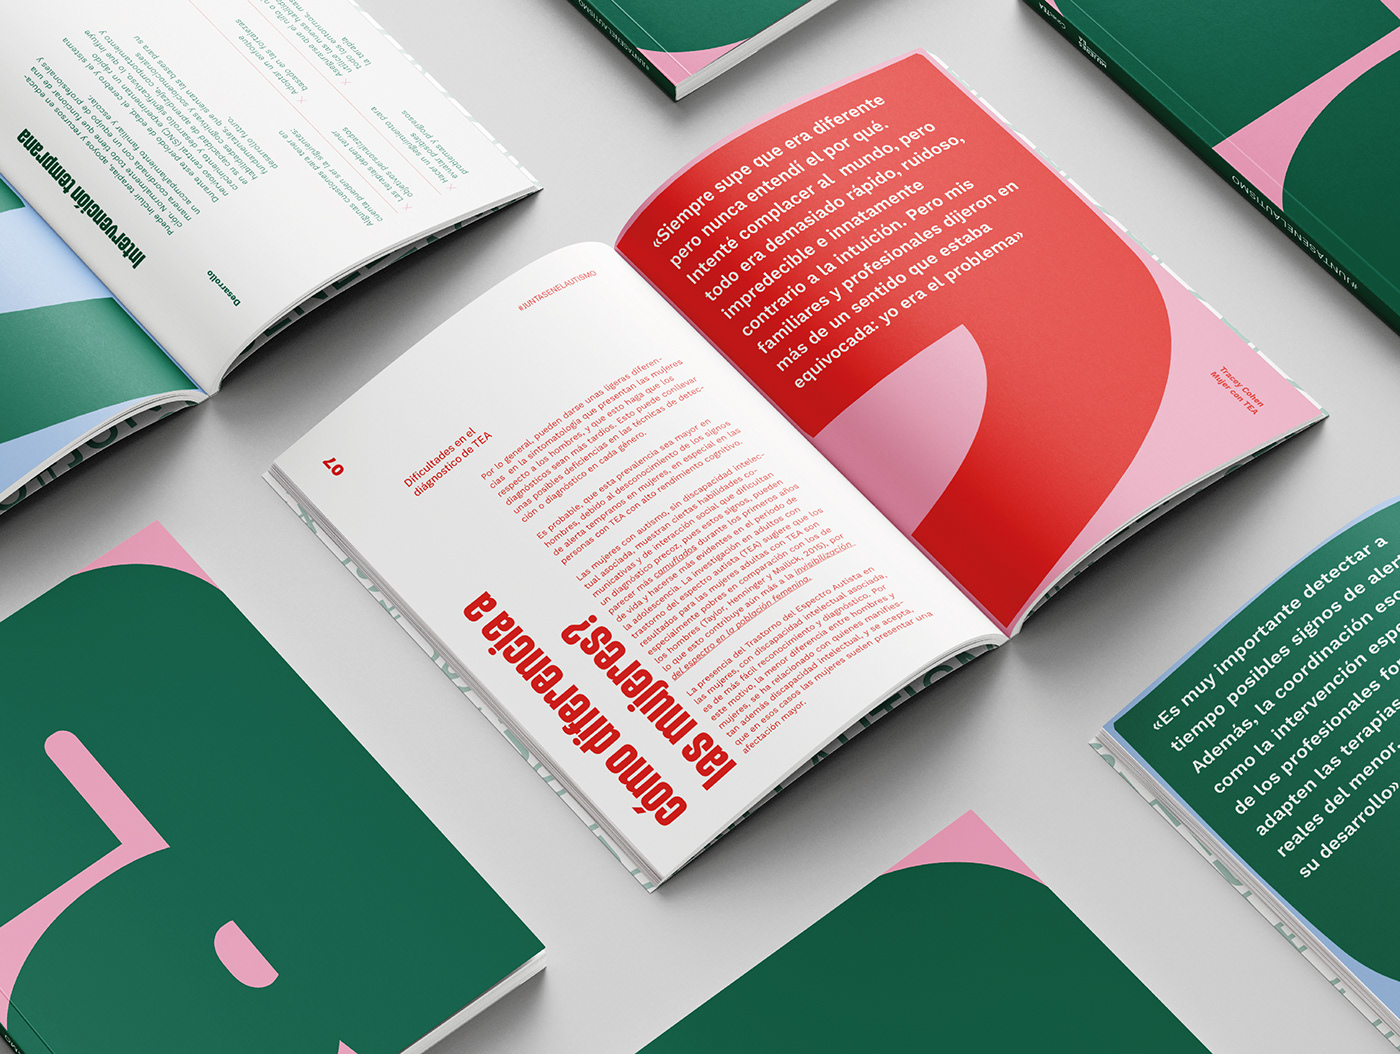 cosgaya 2 Campaña Social identidad diseño gráfico tipografia